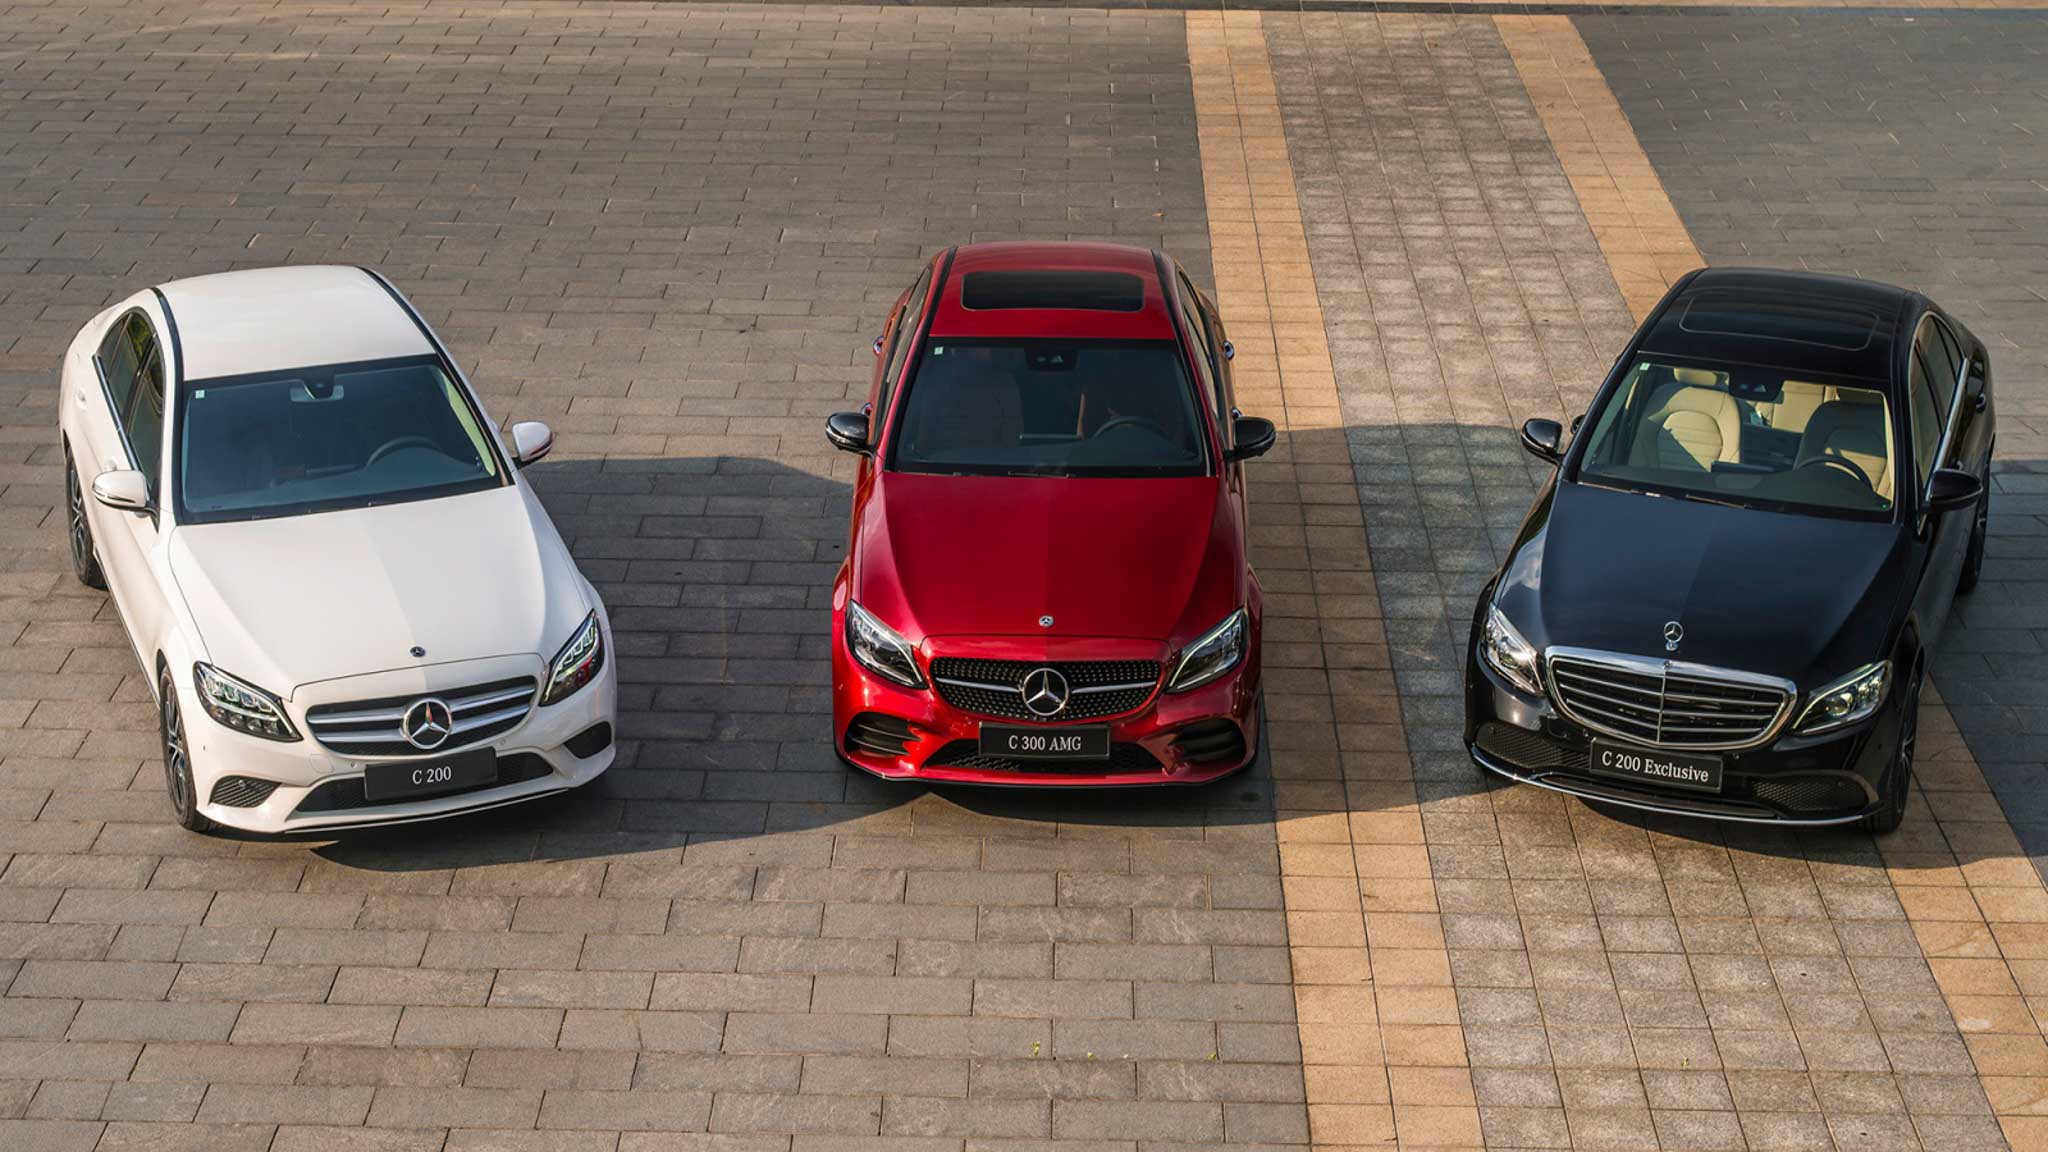 Bảng giá xe Mercedes-Benz 2020 với nhiều khuyến mãi hấp dẫn